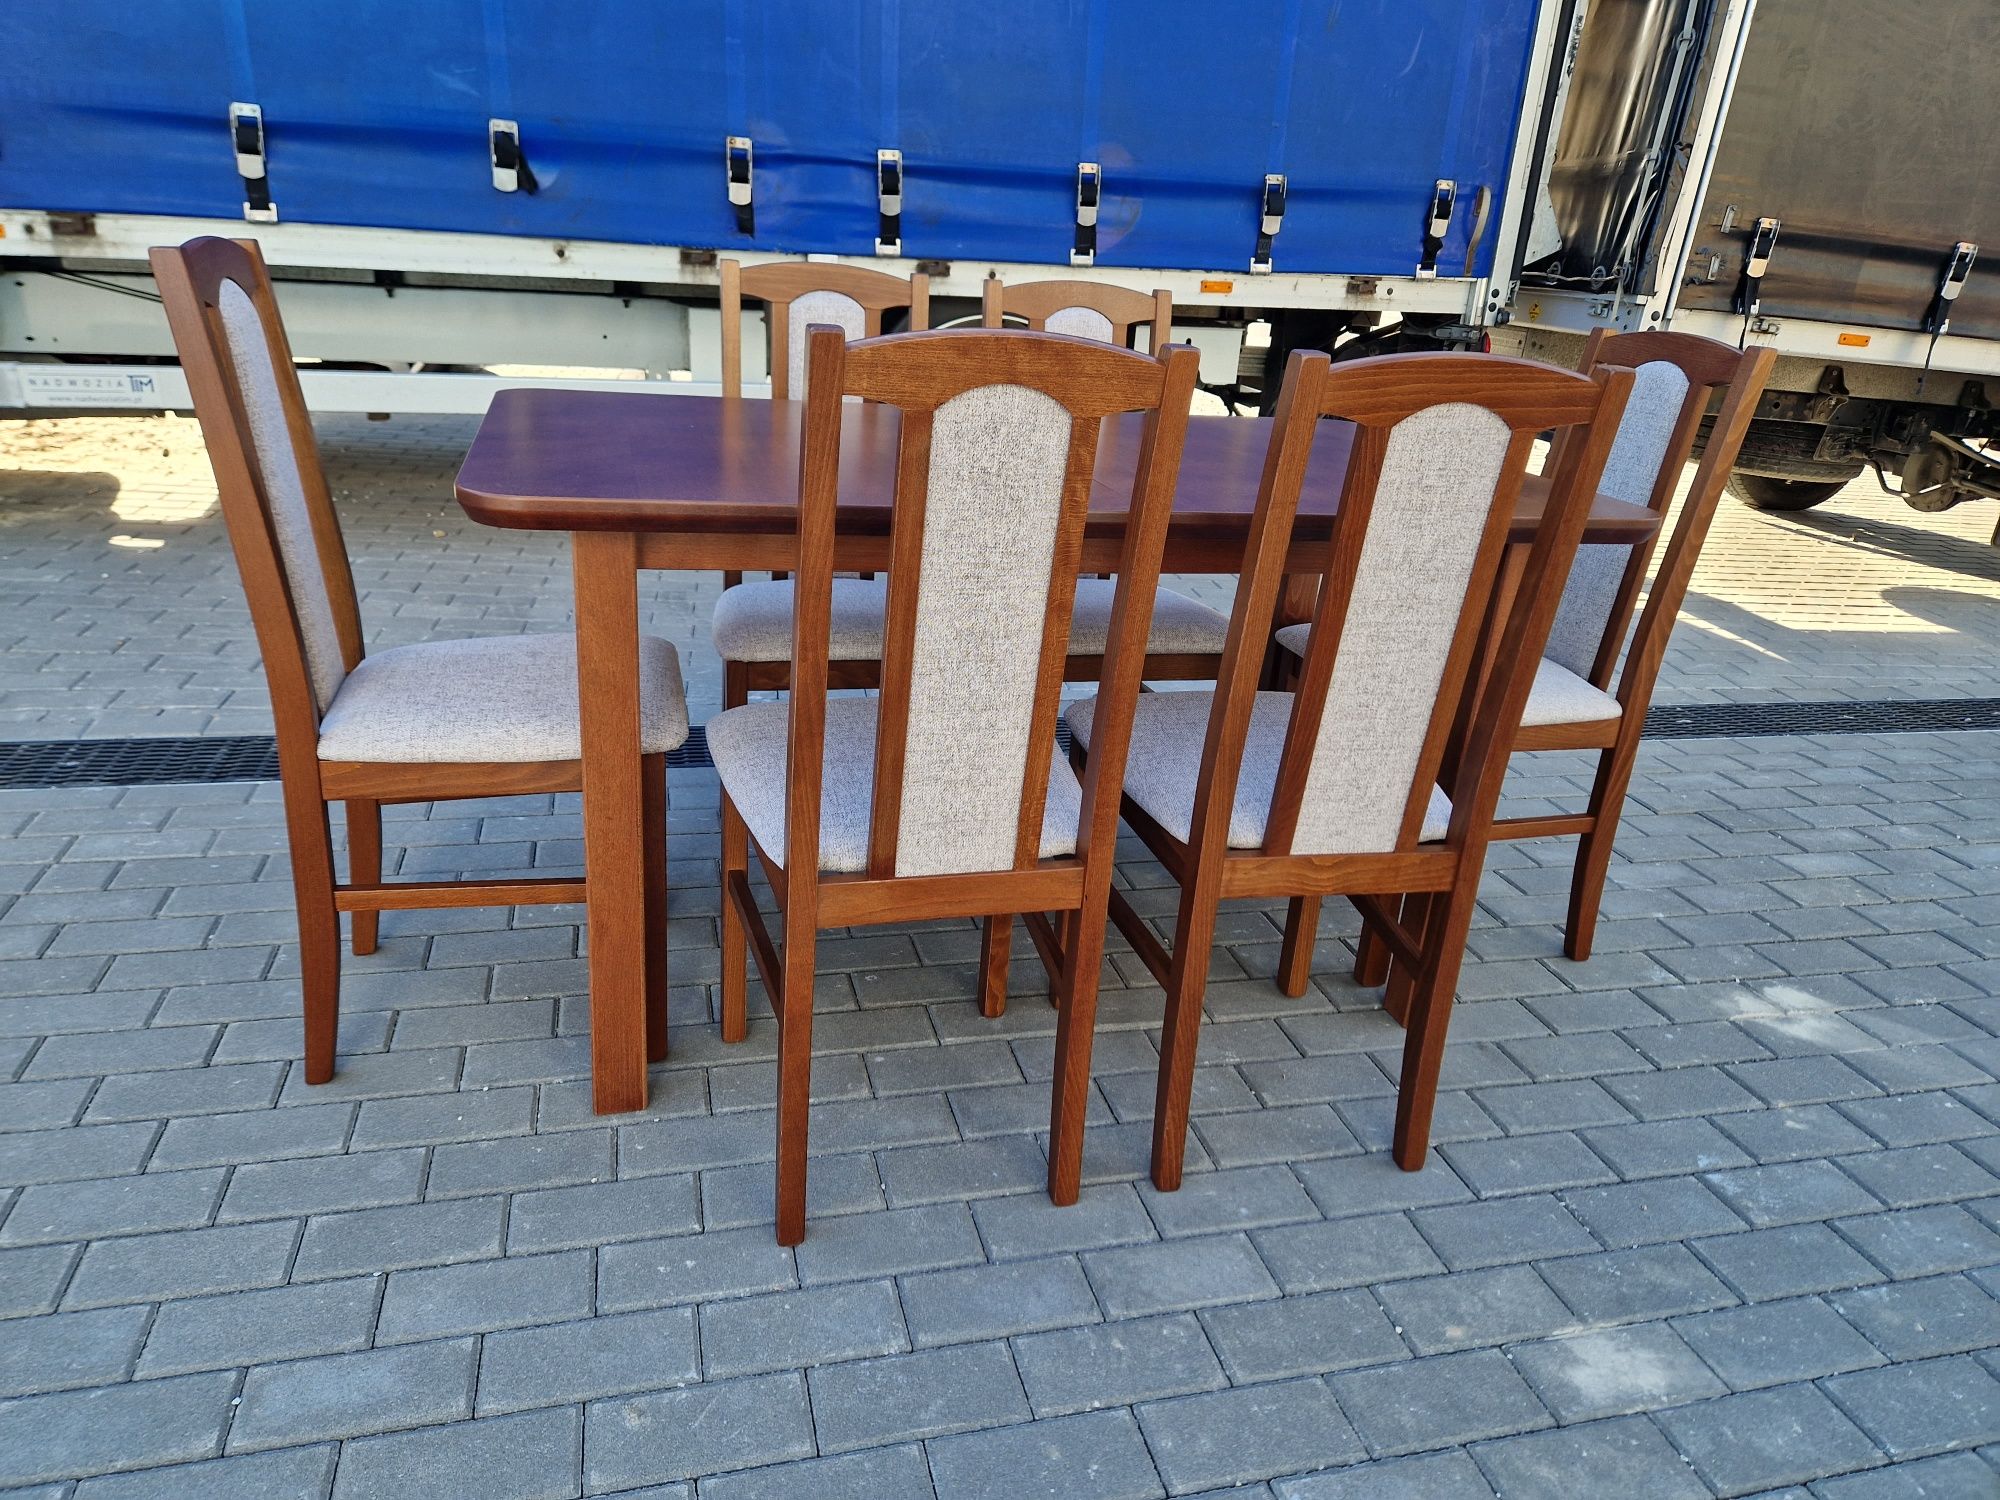 Nowe: Stół 80x140/180 + 6 krzeseł, kasztan + kawa z mlekiem , od ręki